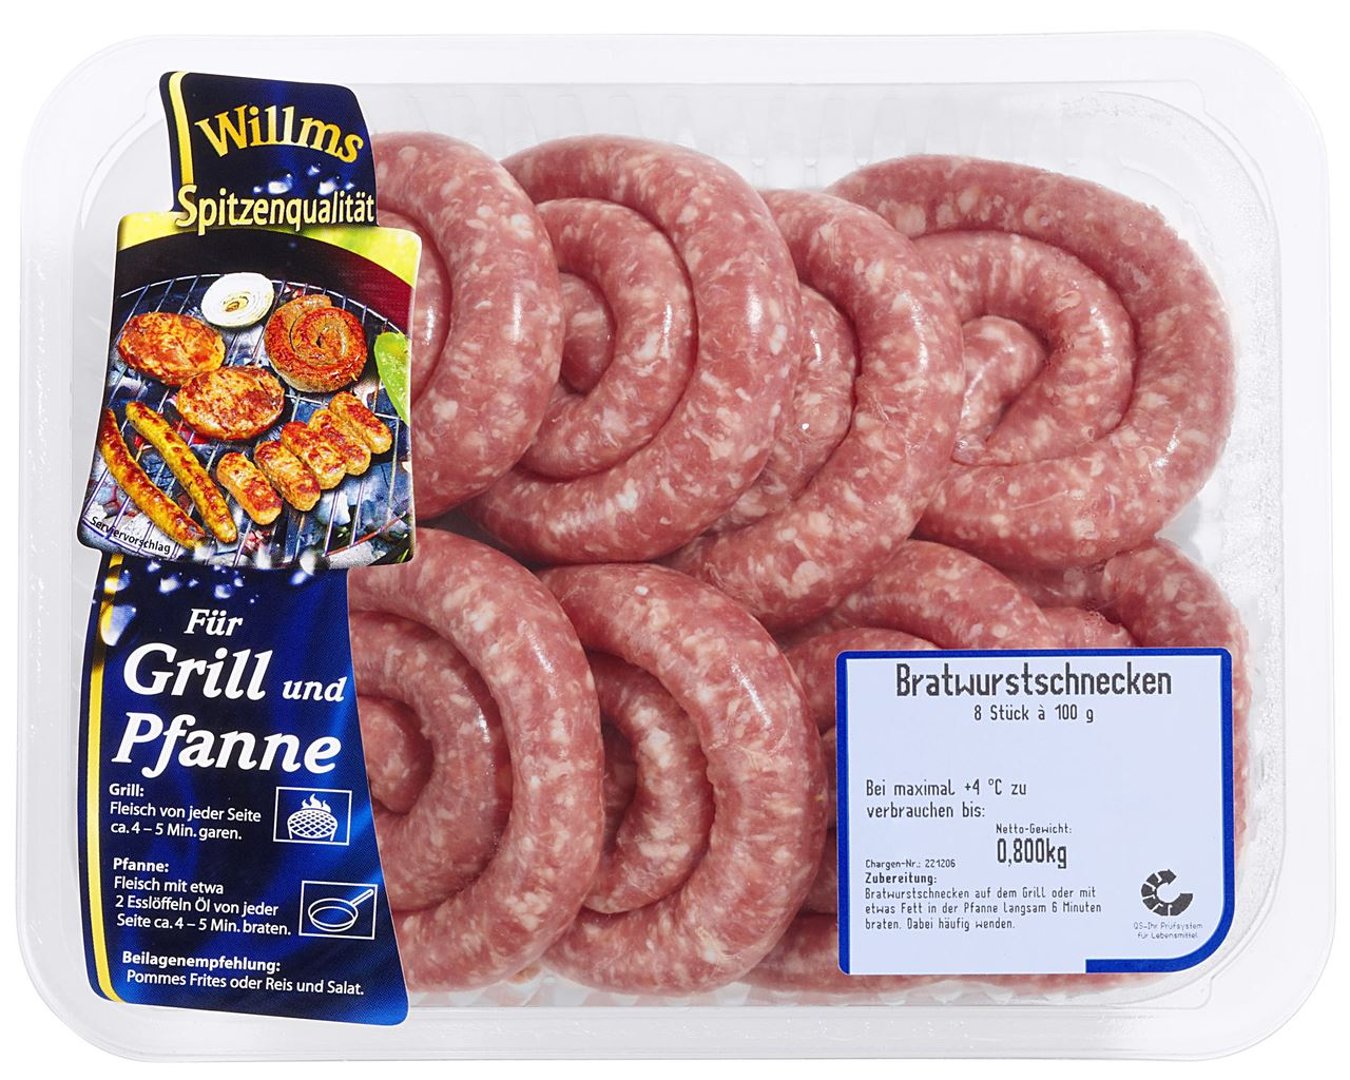 Willms - QS Bratwurstschnecken 8 Stück à 100 g - 800 g Packung